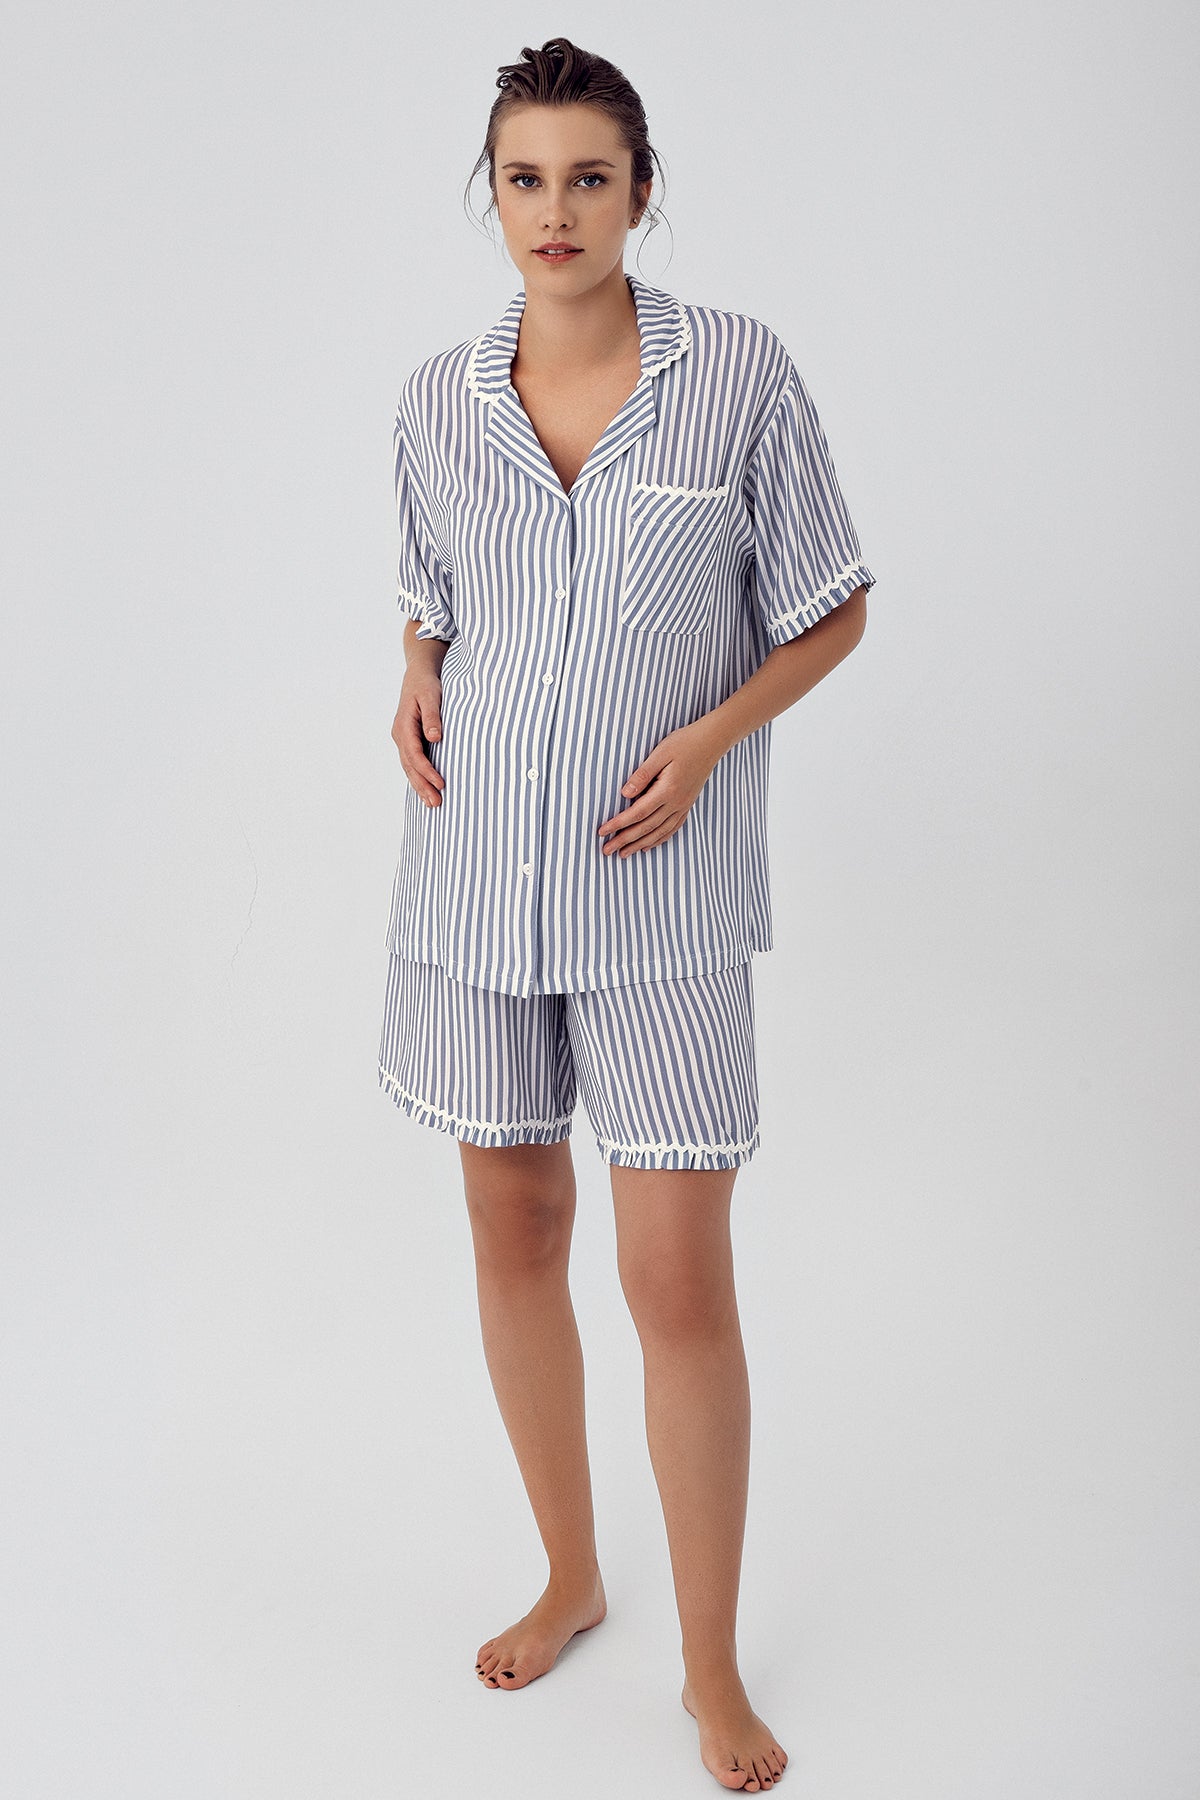 Shopymommy 16204 Striped Maternity & Nursing Shorts Set Indigo